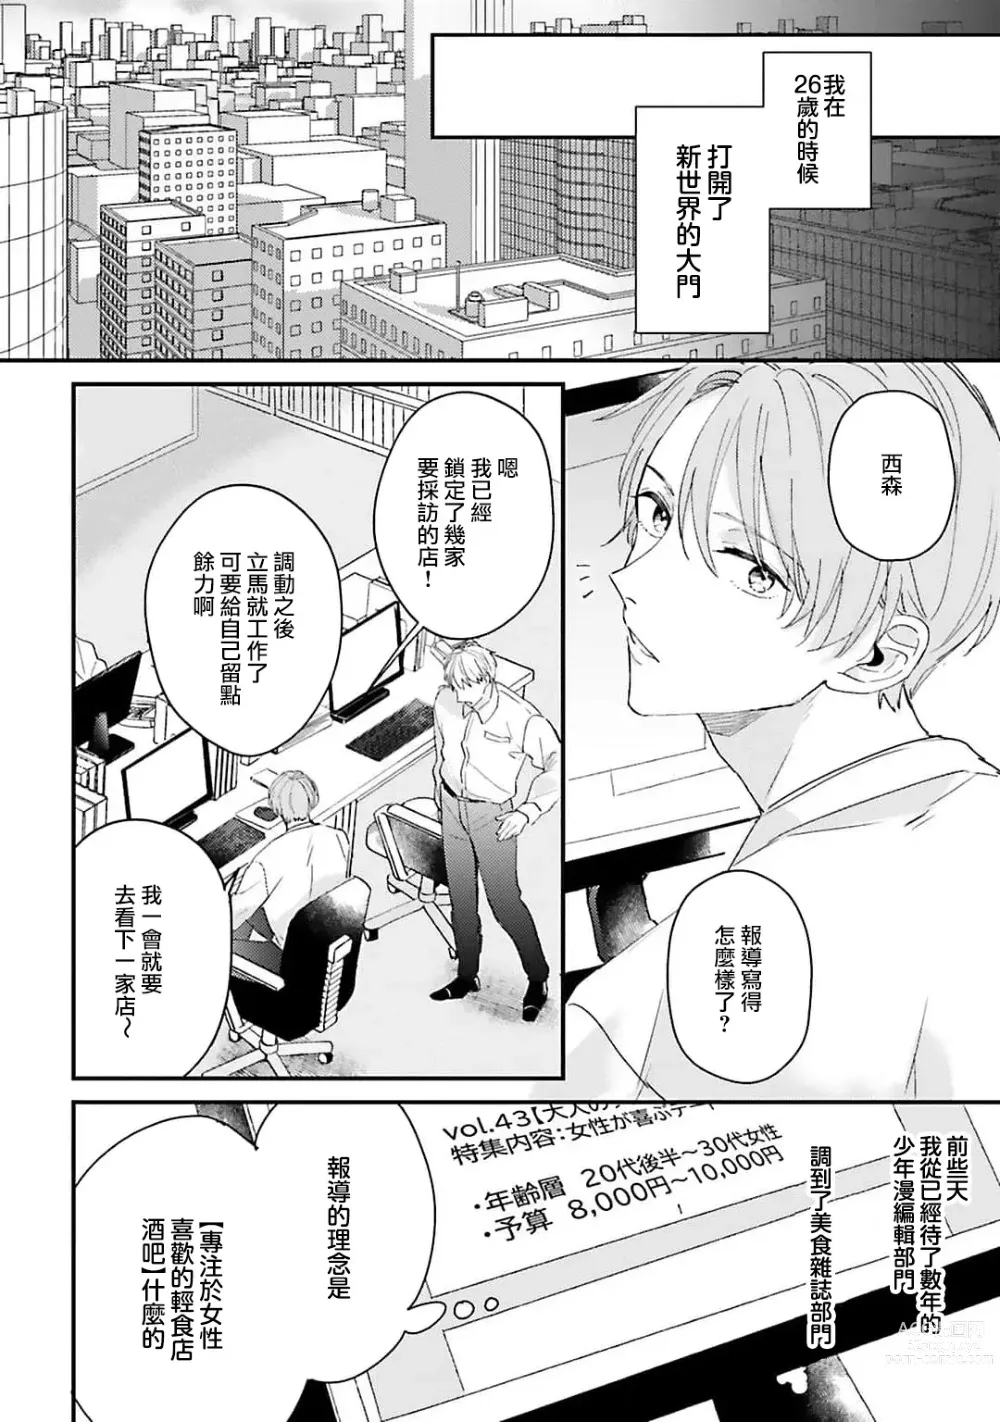 Page 3 of manga 绽放的恋爱皆为醉与甜1